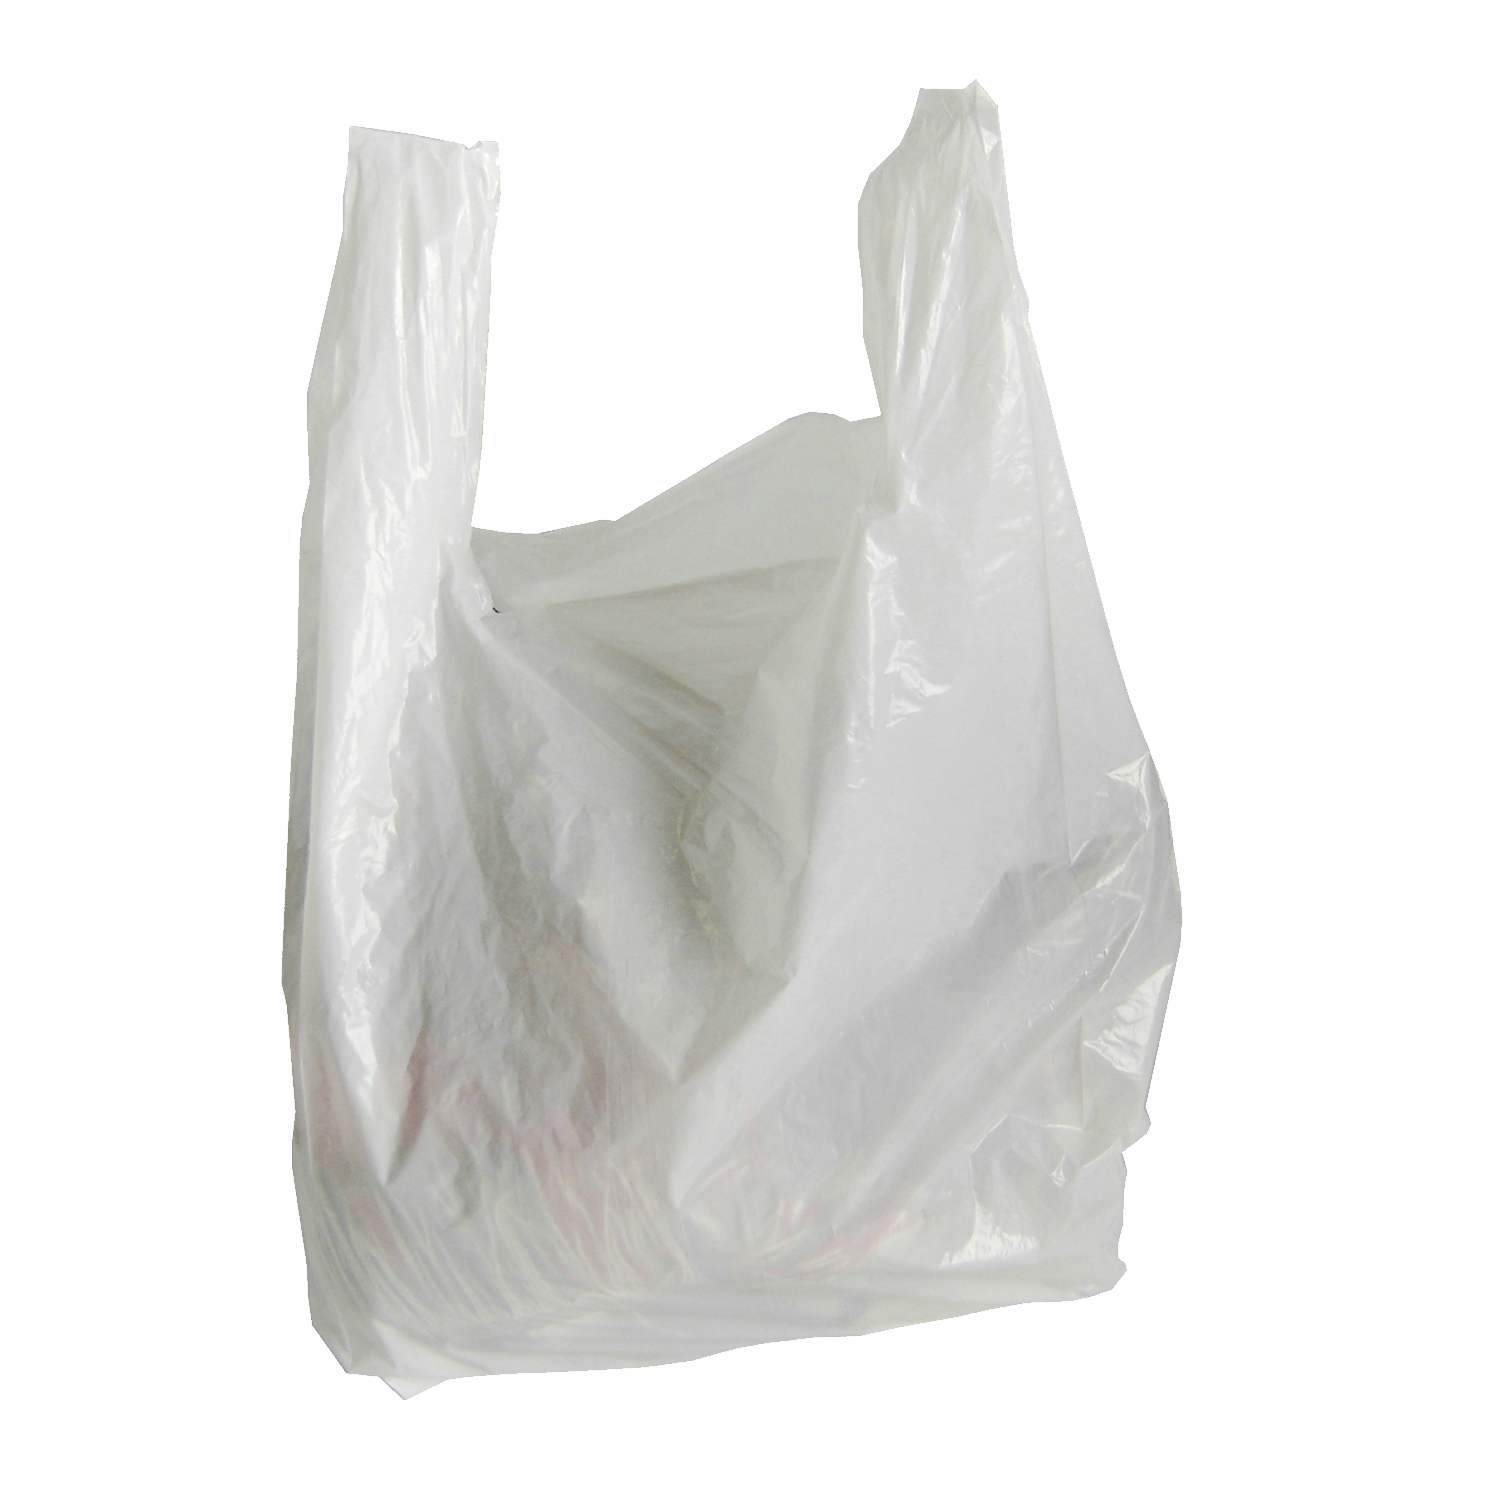 1K Plastic Bag Pictures  Download Free Images on Unsplash